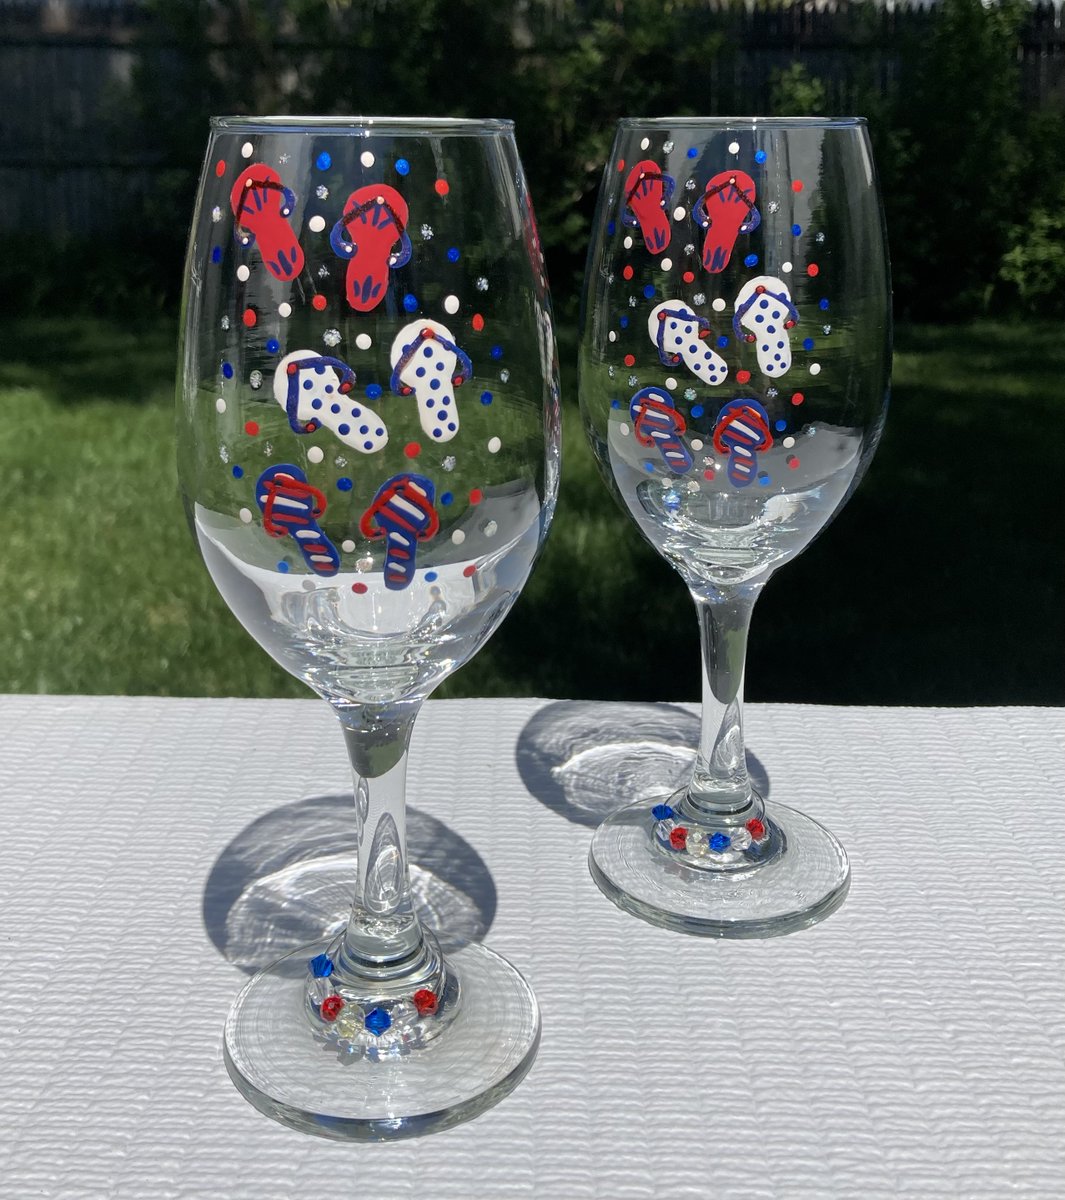 Cool Summer glasses etsy.com/listing/172769… #summer #wineglasses #flipflops #SMILEtt23 #etsy